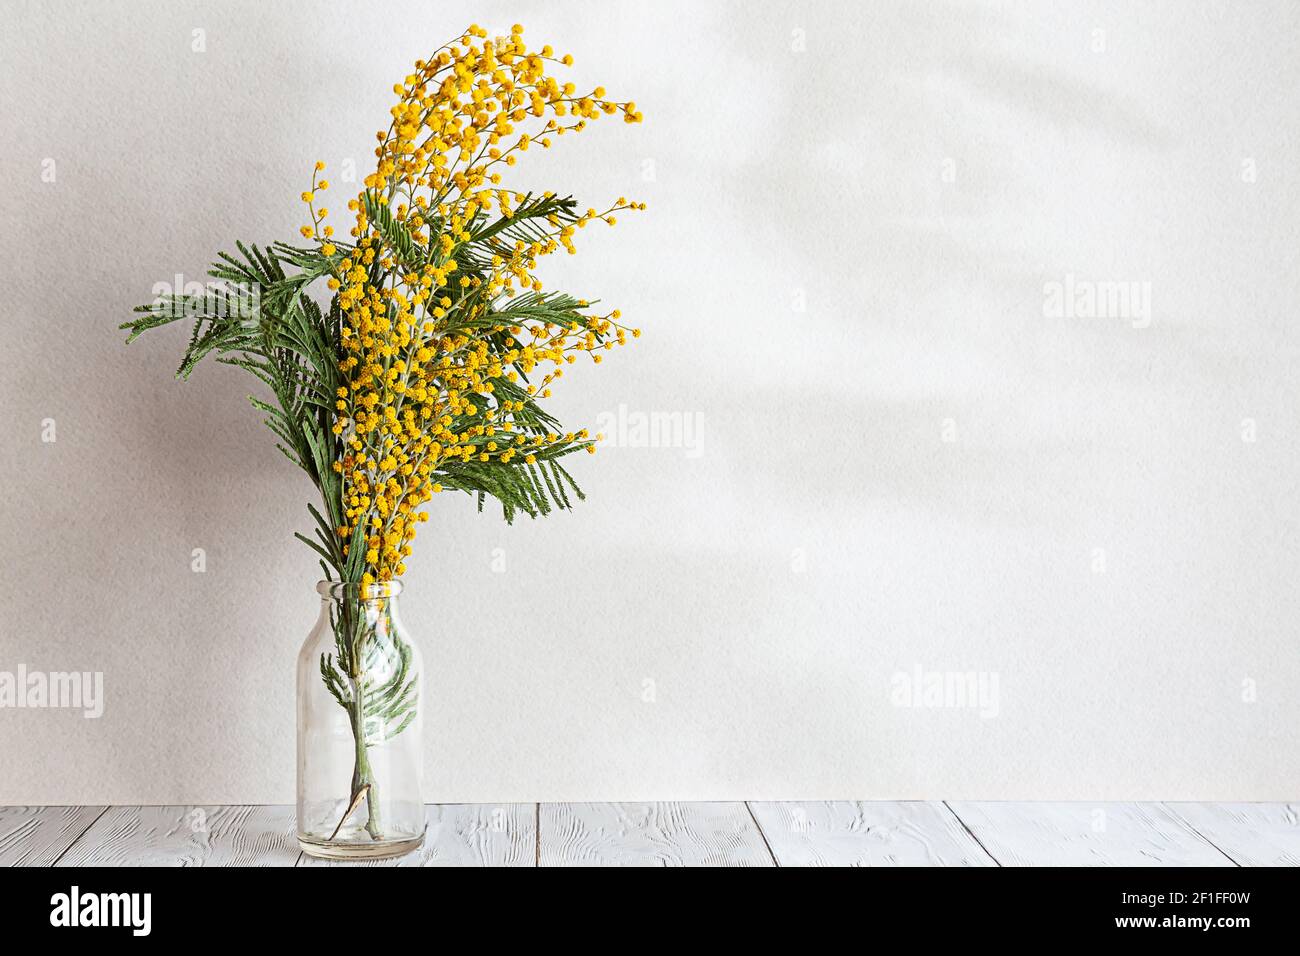 Un bouquet de fleurs mimosa dans un vase en verre sur fond gris clair. Composition de ressort avec des ombres intéressantes, espace de copie. Banque D'Images